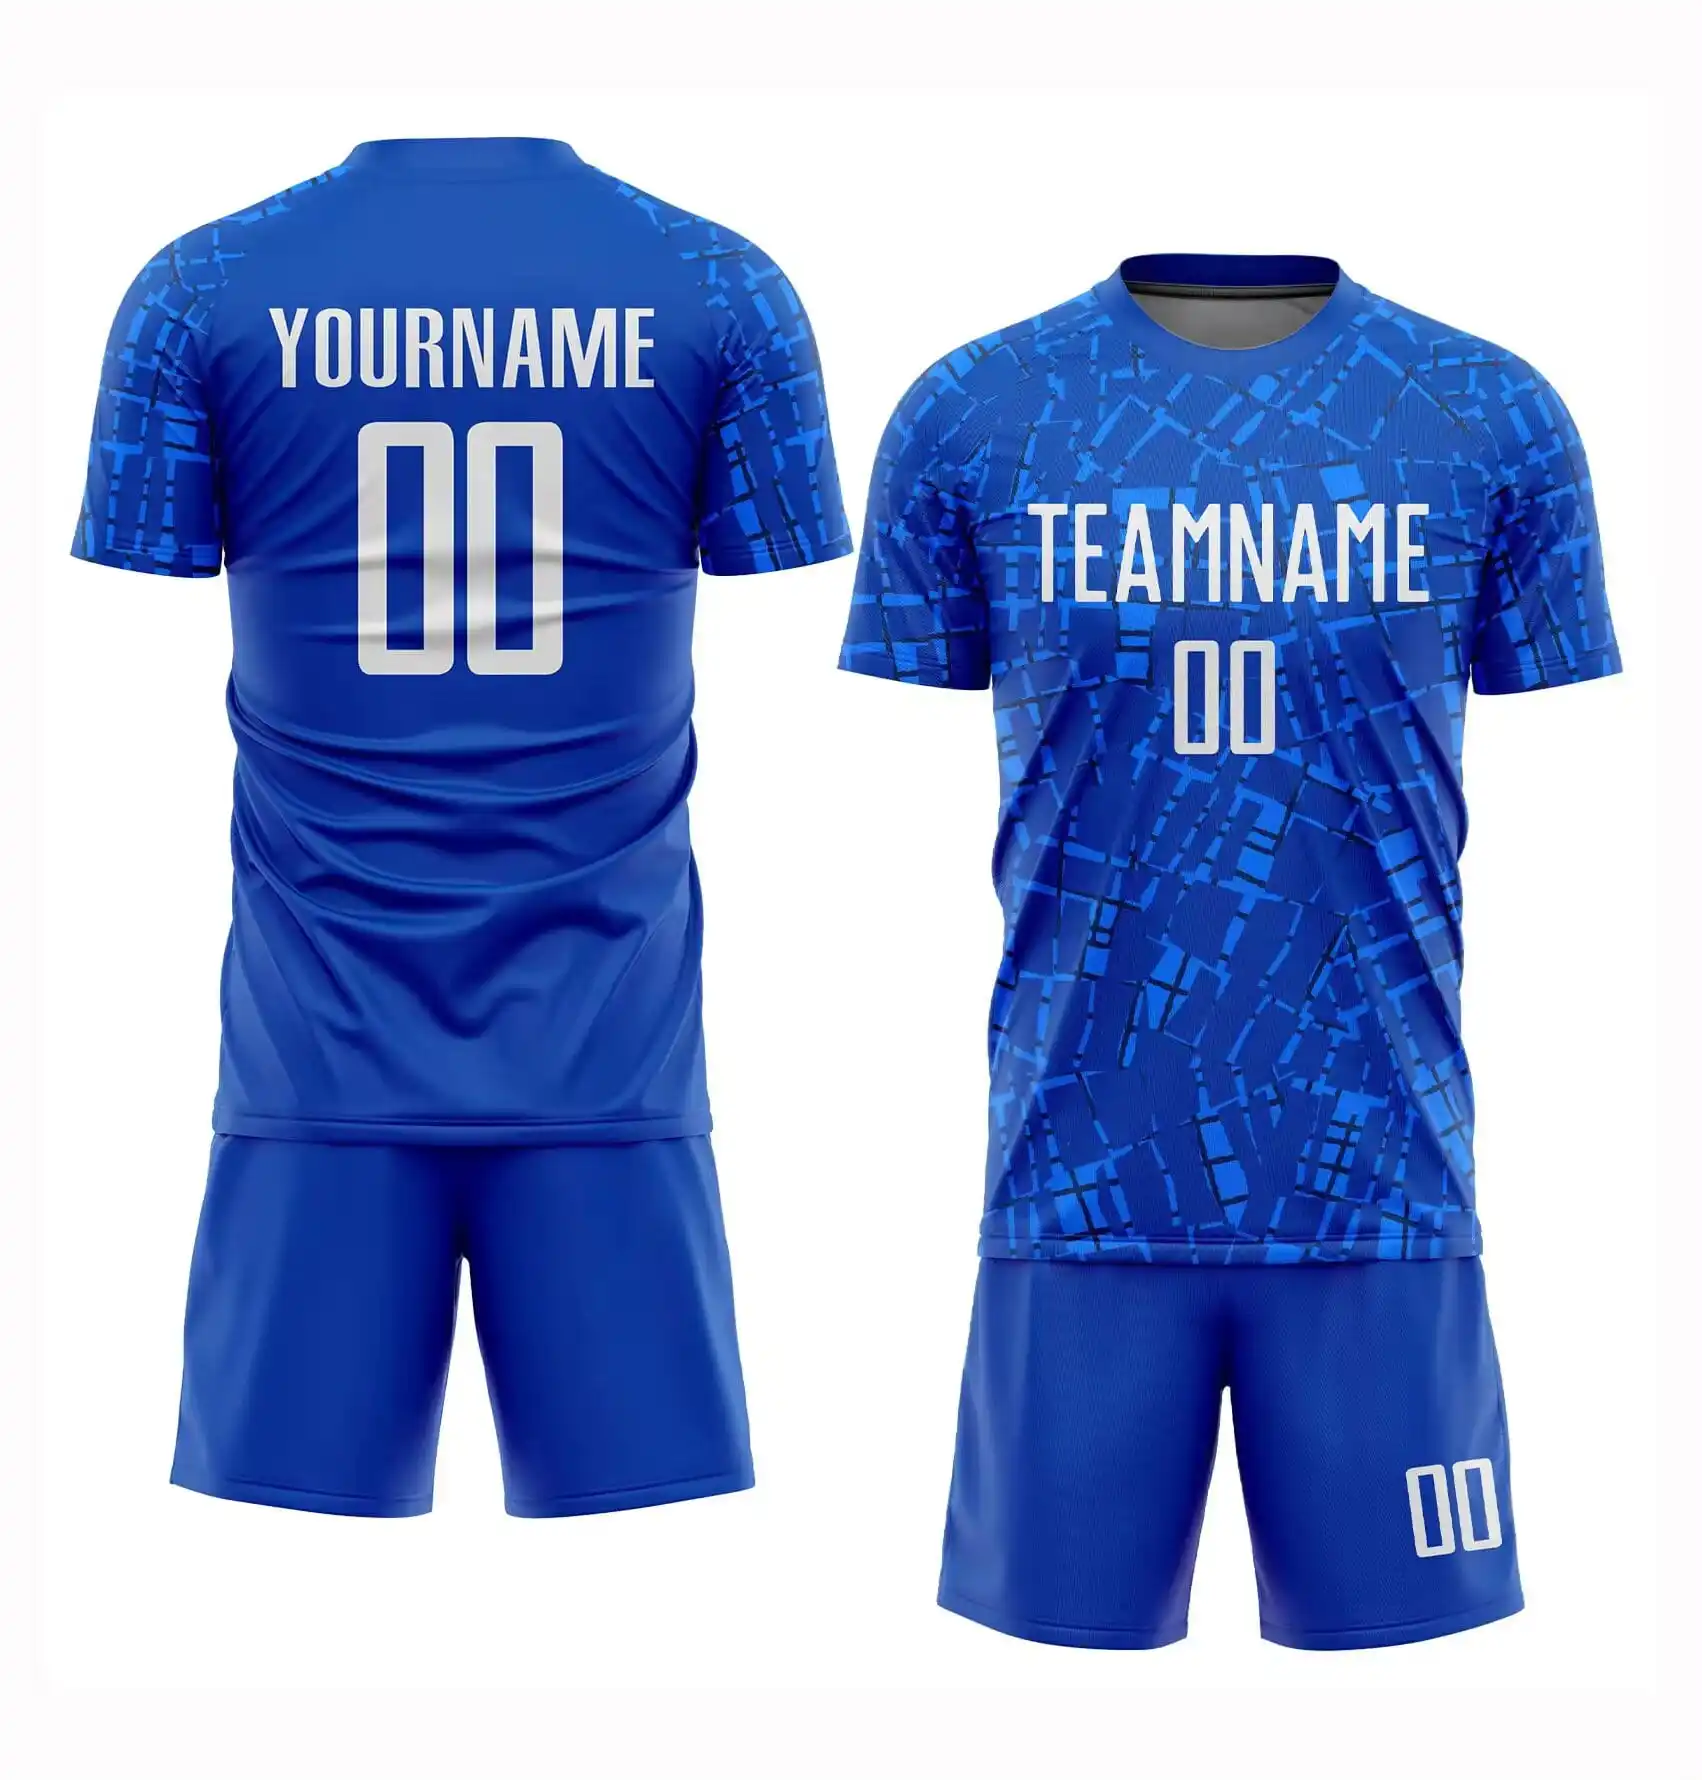 2024 yeni özel üniforma Set kaliteli erkek futbol forması tay futbol kıyafetleri yetişkinler için Unisex takım futbol forması